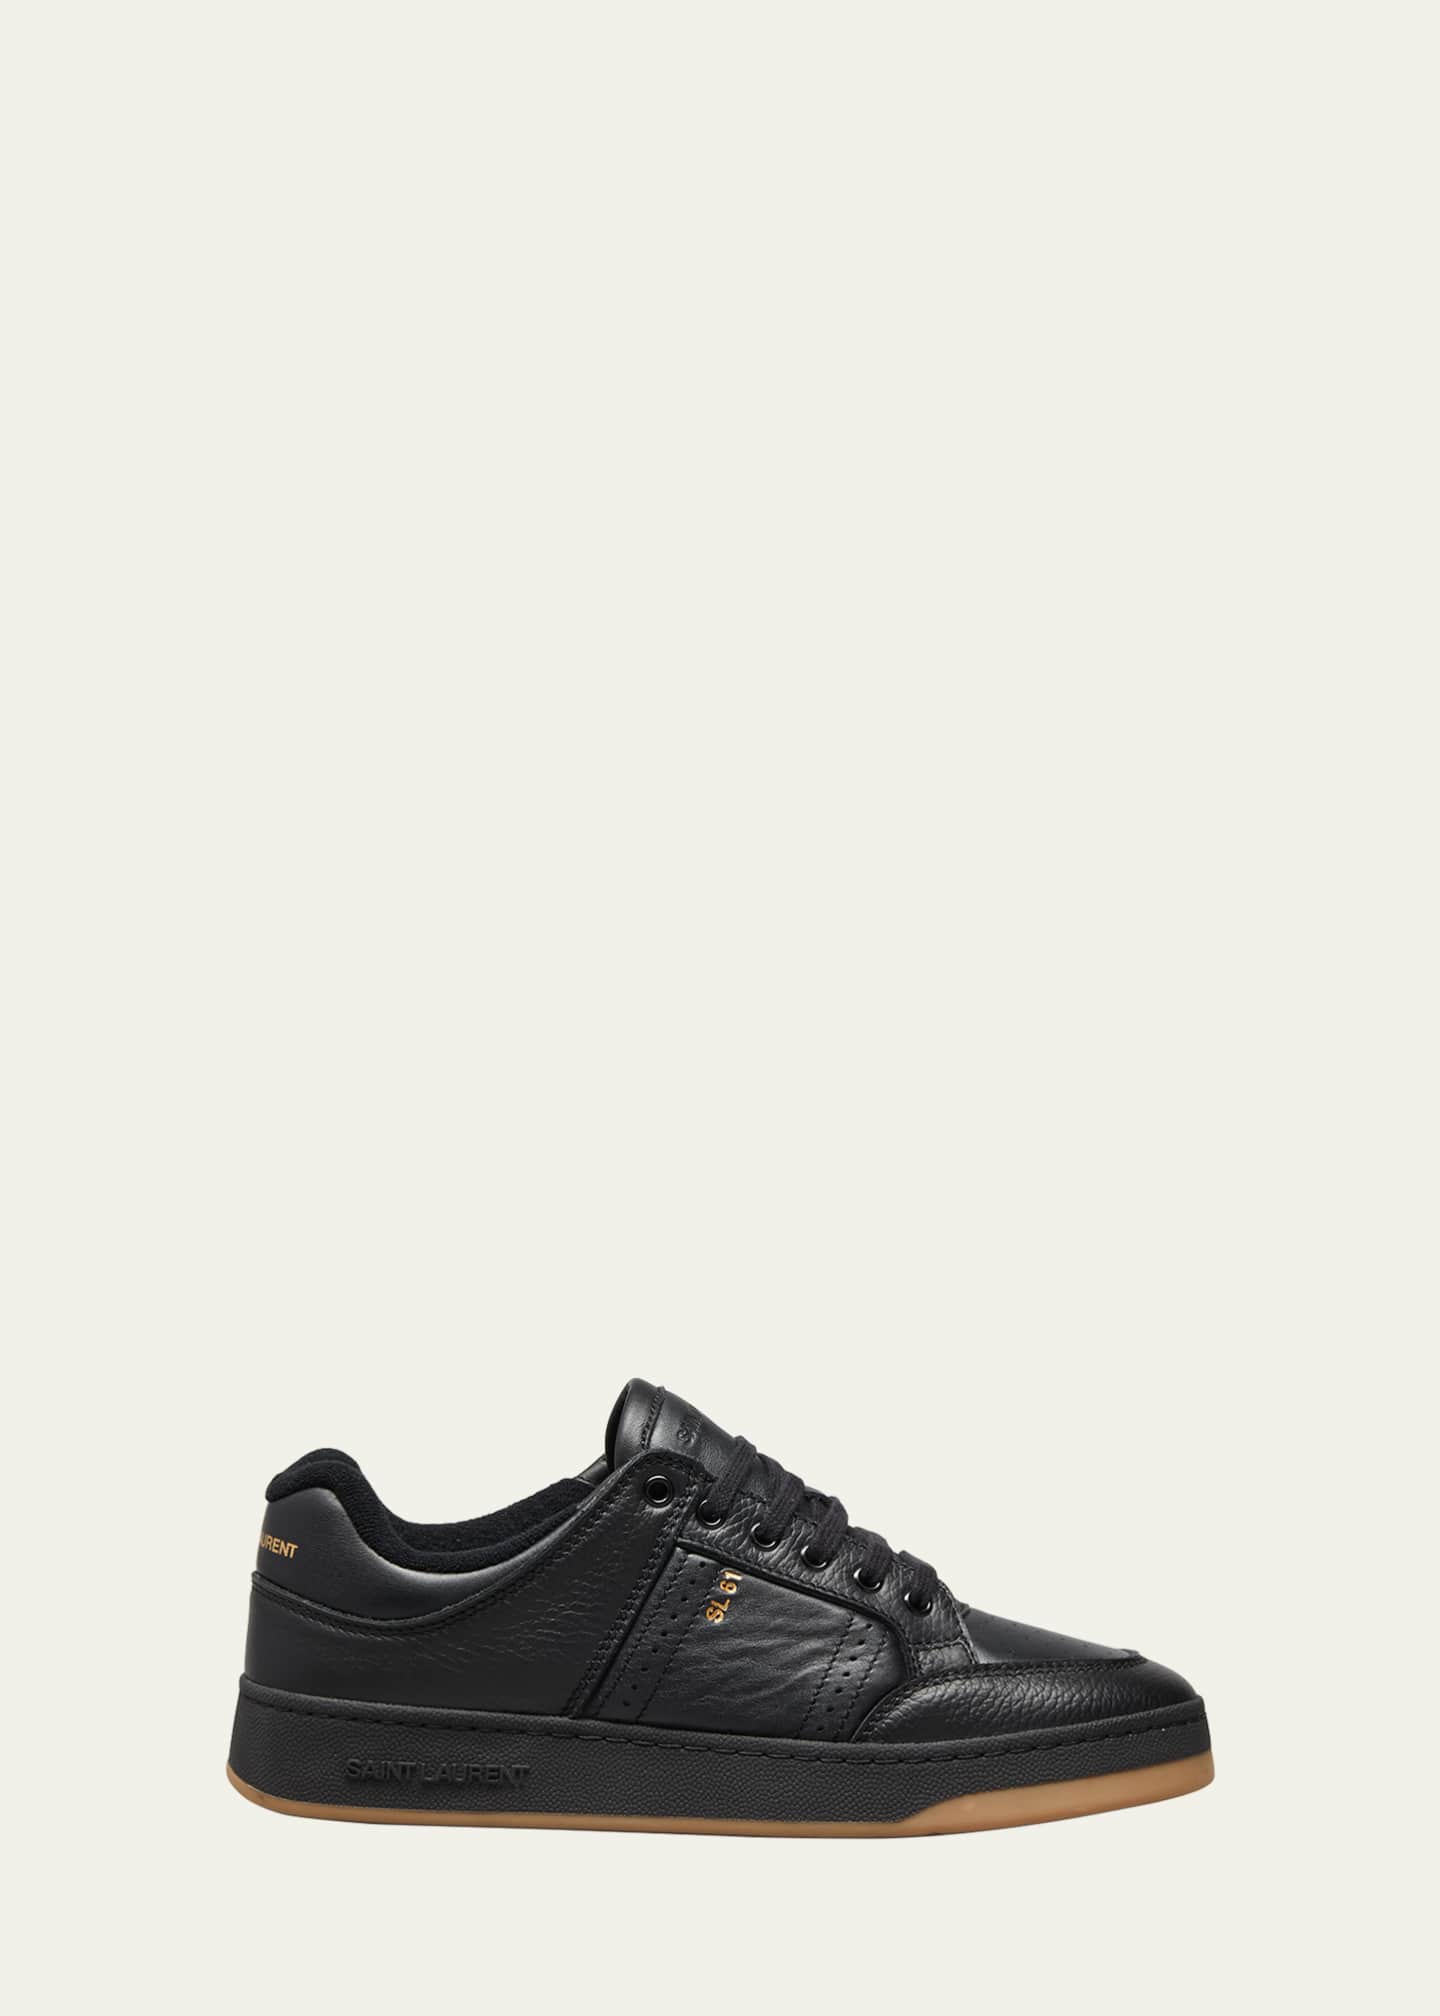 Saint Laurent Men's SL/61 Low-Top Leather Sneakers - Bergdorf Goodman